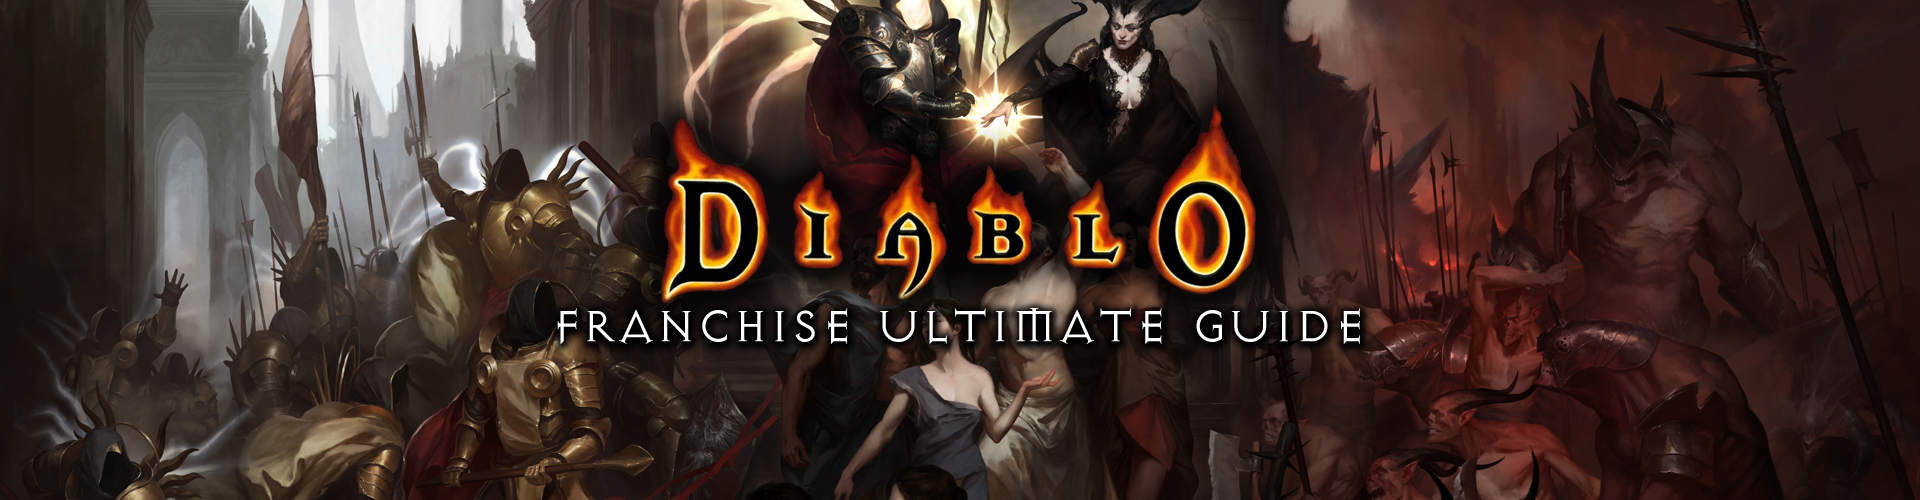 Serie Diablo: La mejor franquicia de juegos Hack and Slash